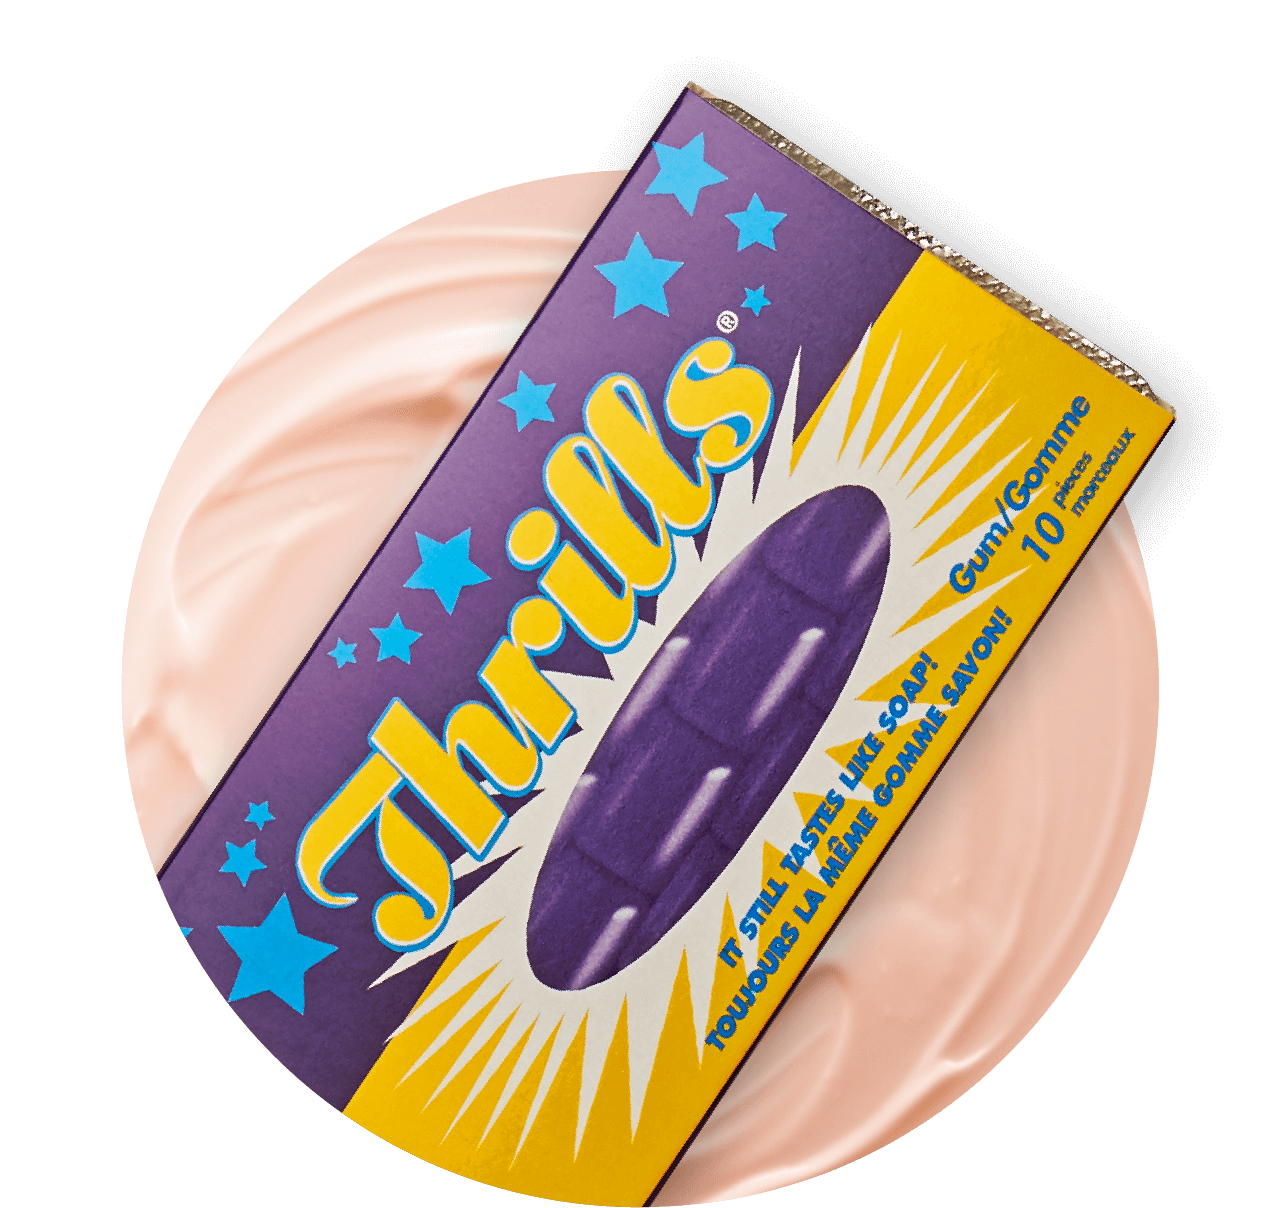 Thrills Chewing Gum